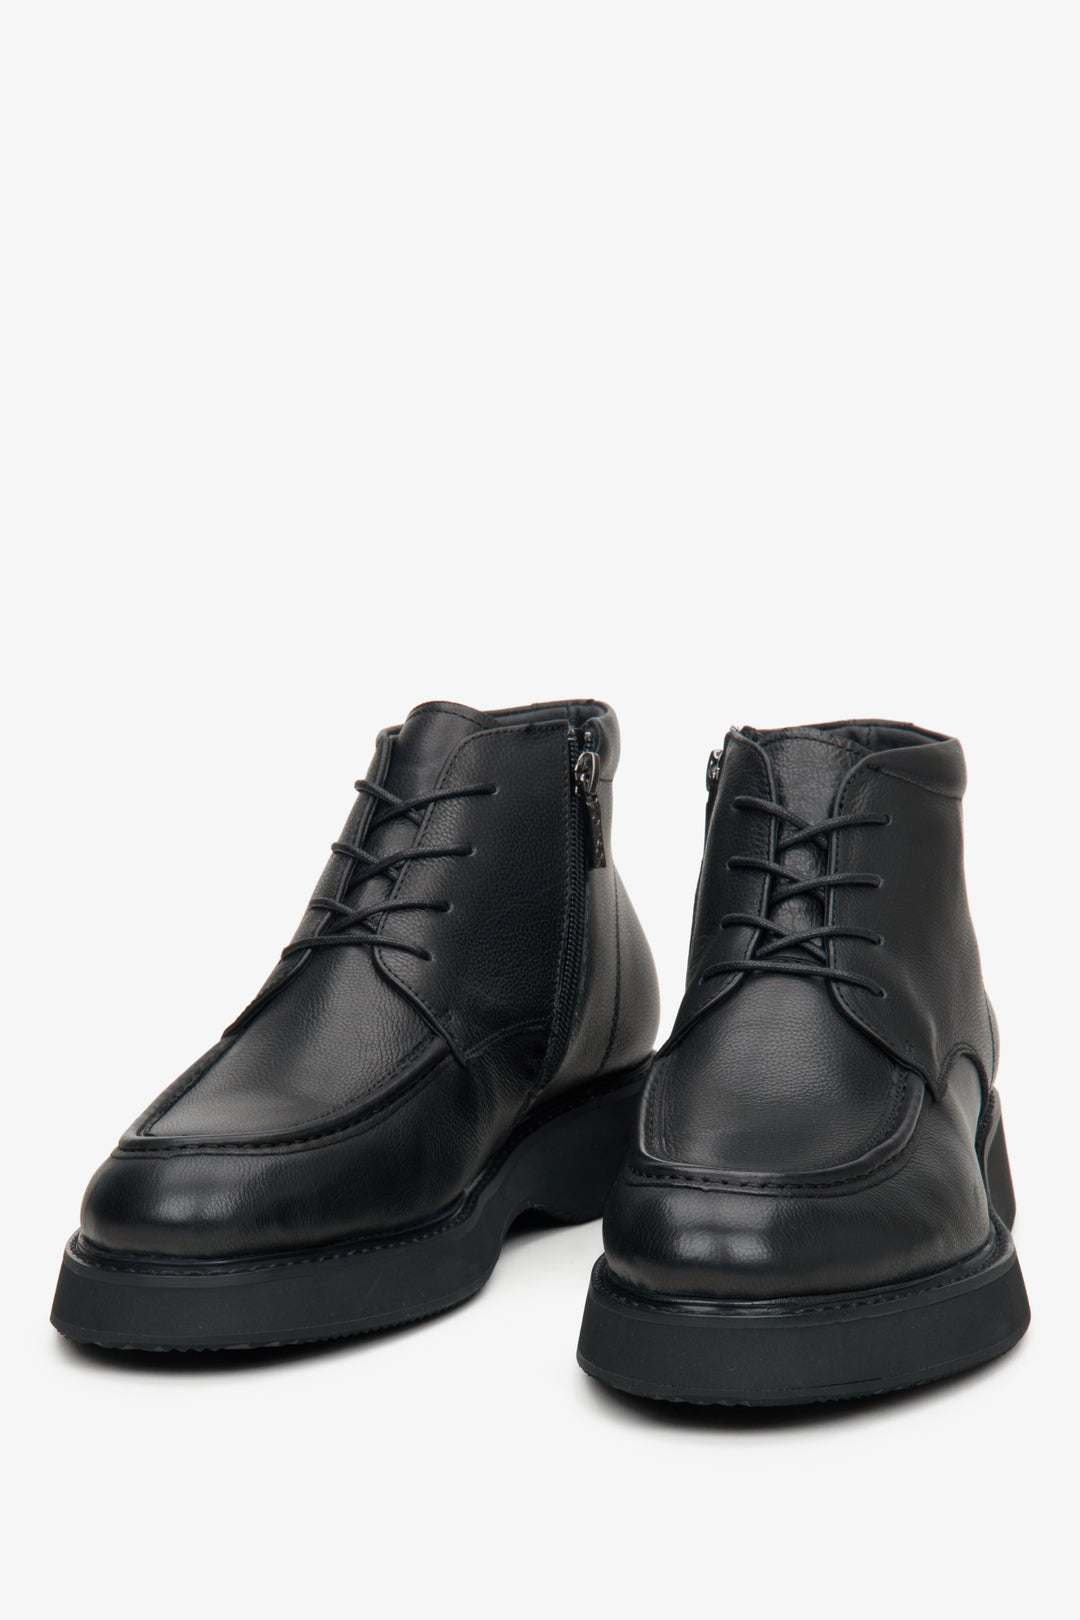 Men's black leather boots by Estro.